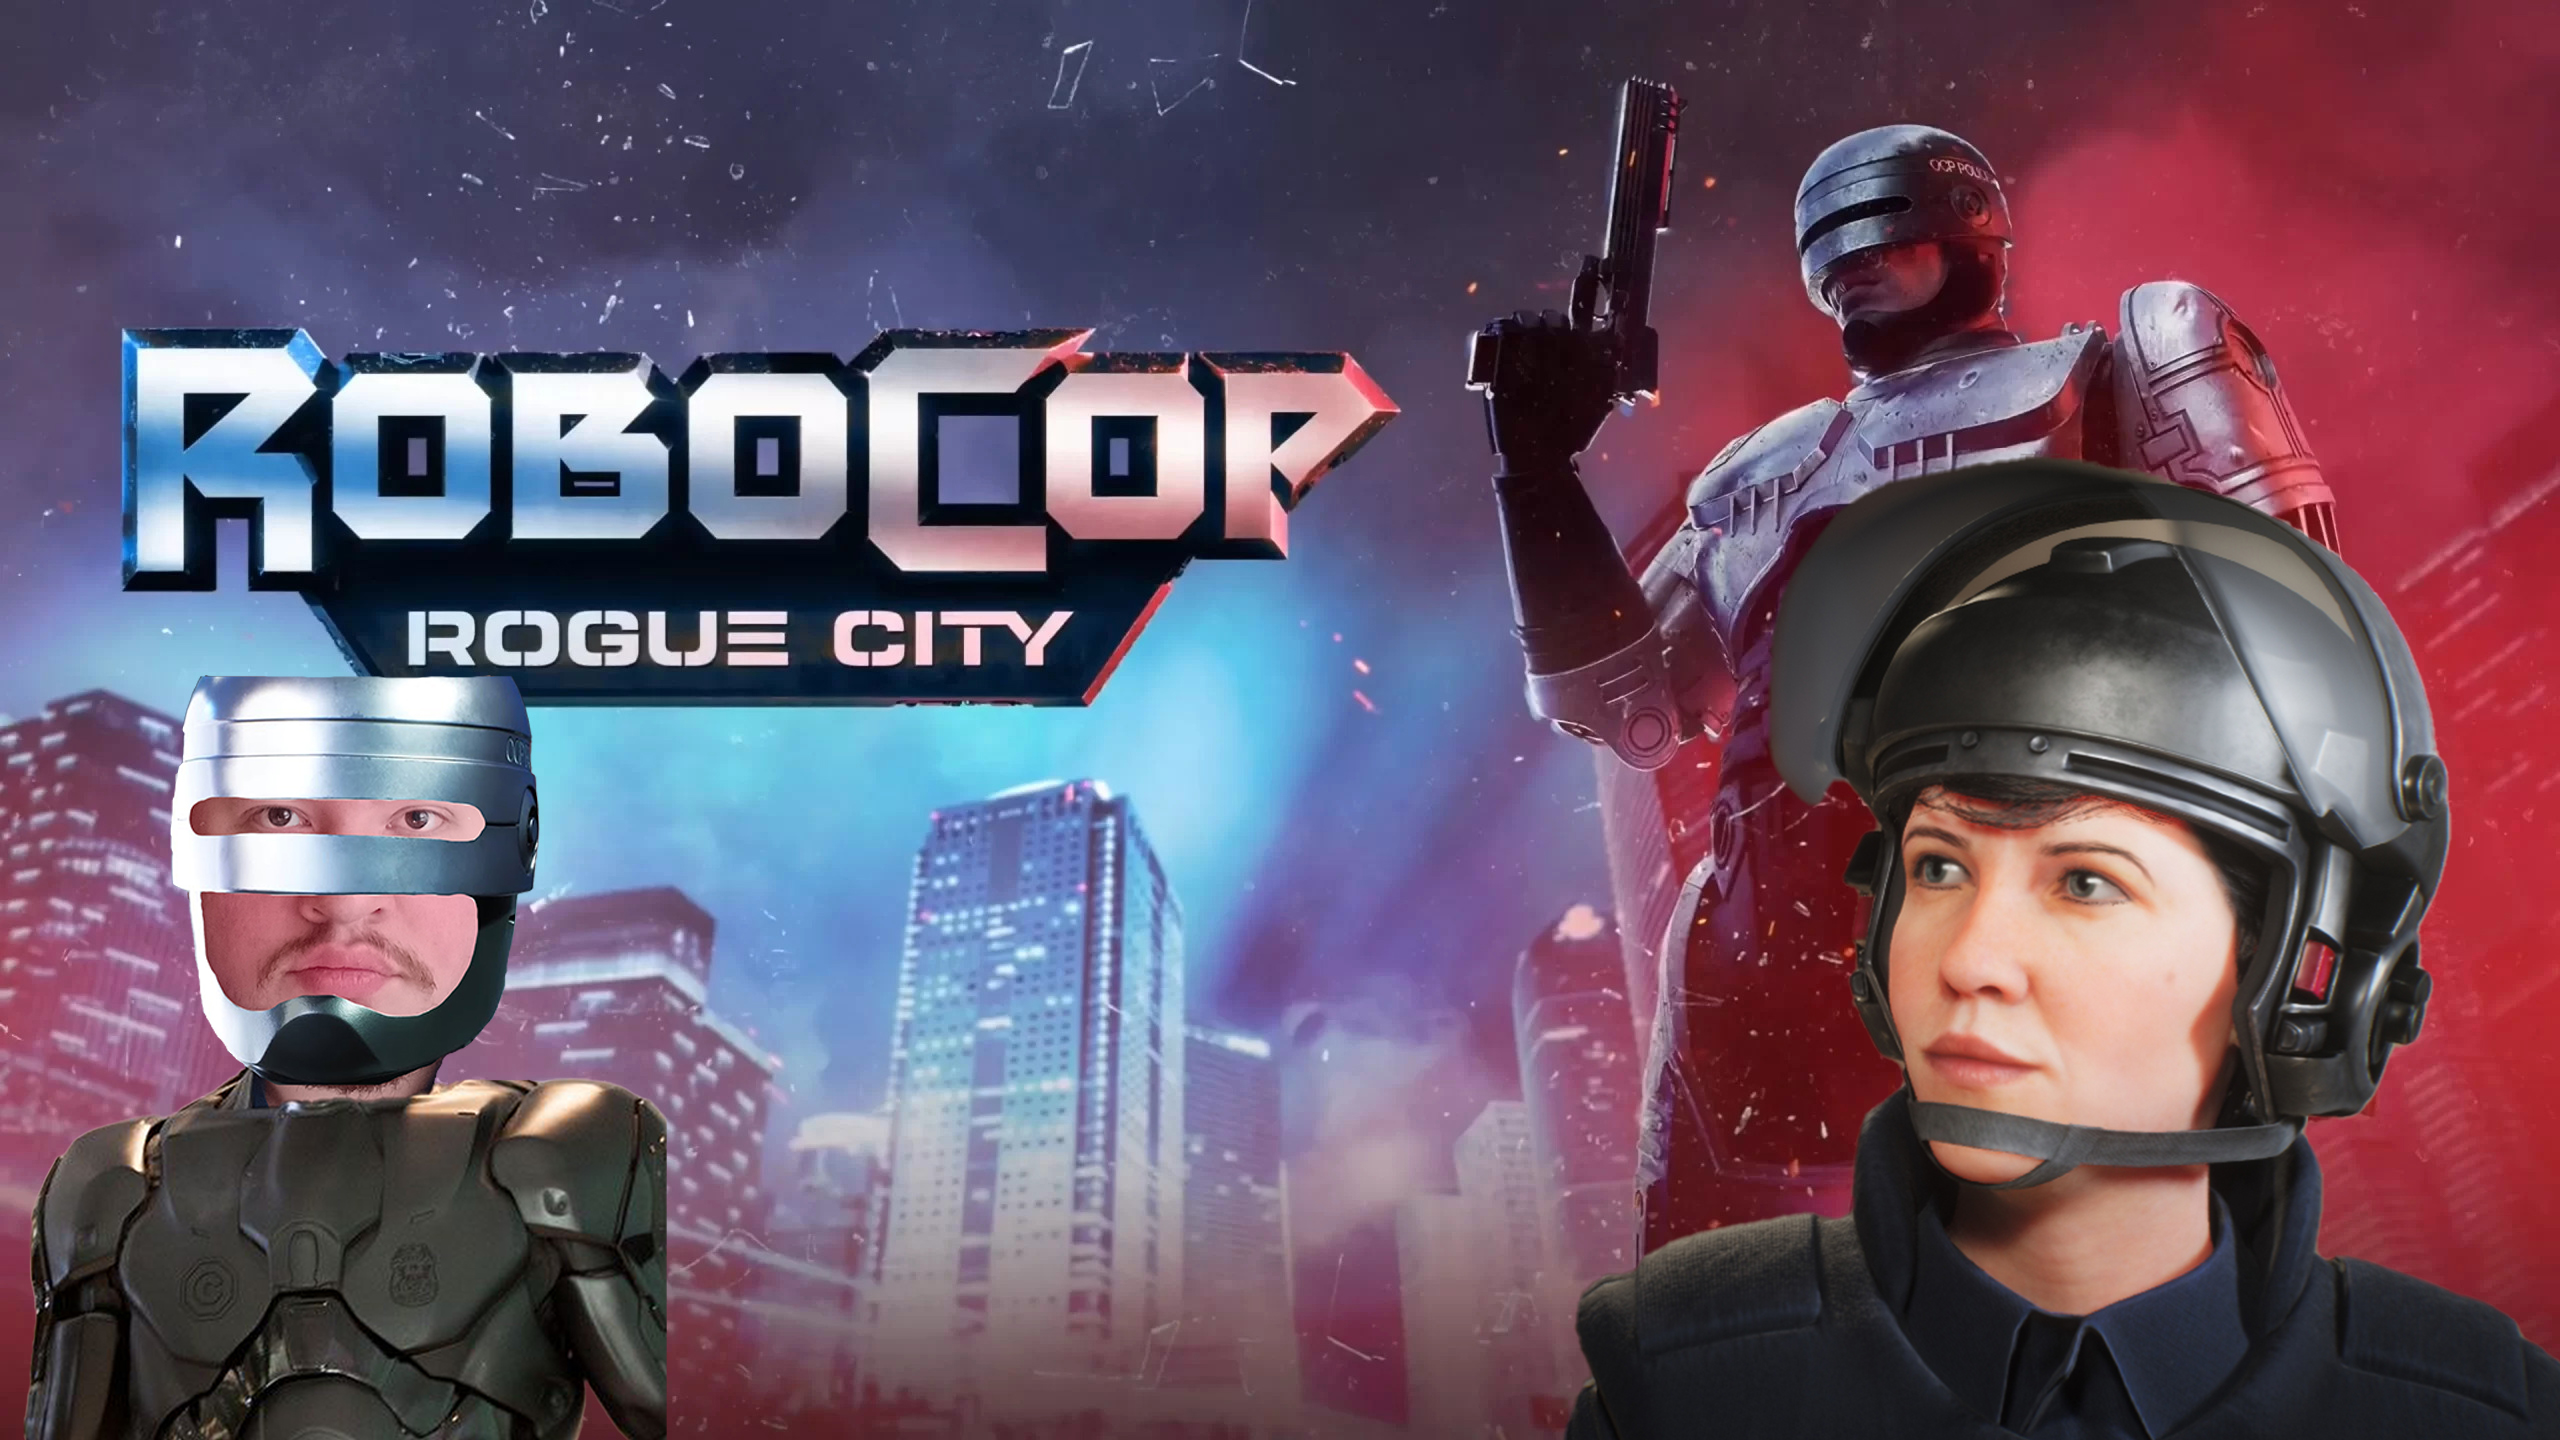 Robocop: Rogue City/ПРОХОЖДЕНИЕ/ЧАСТЬ 1